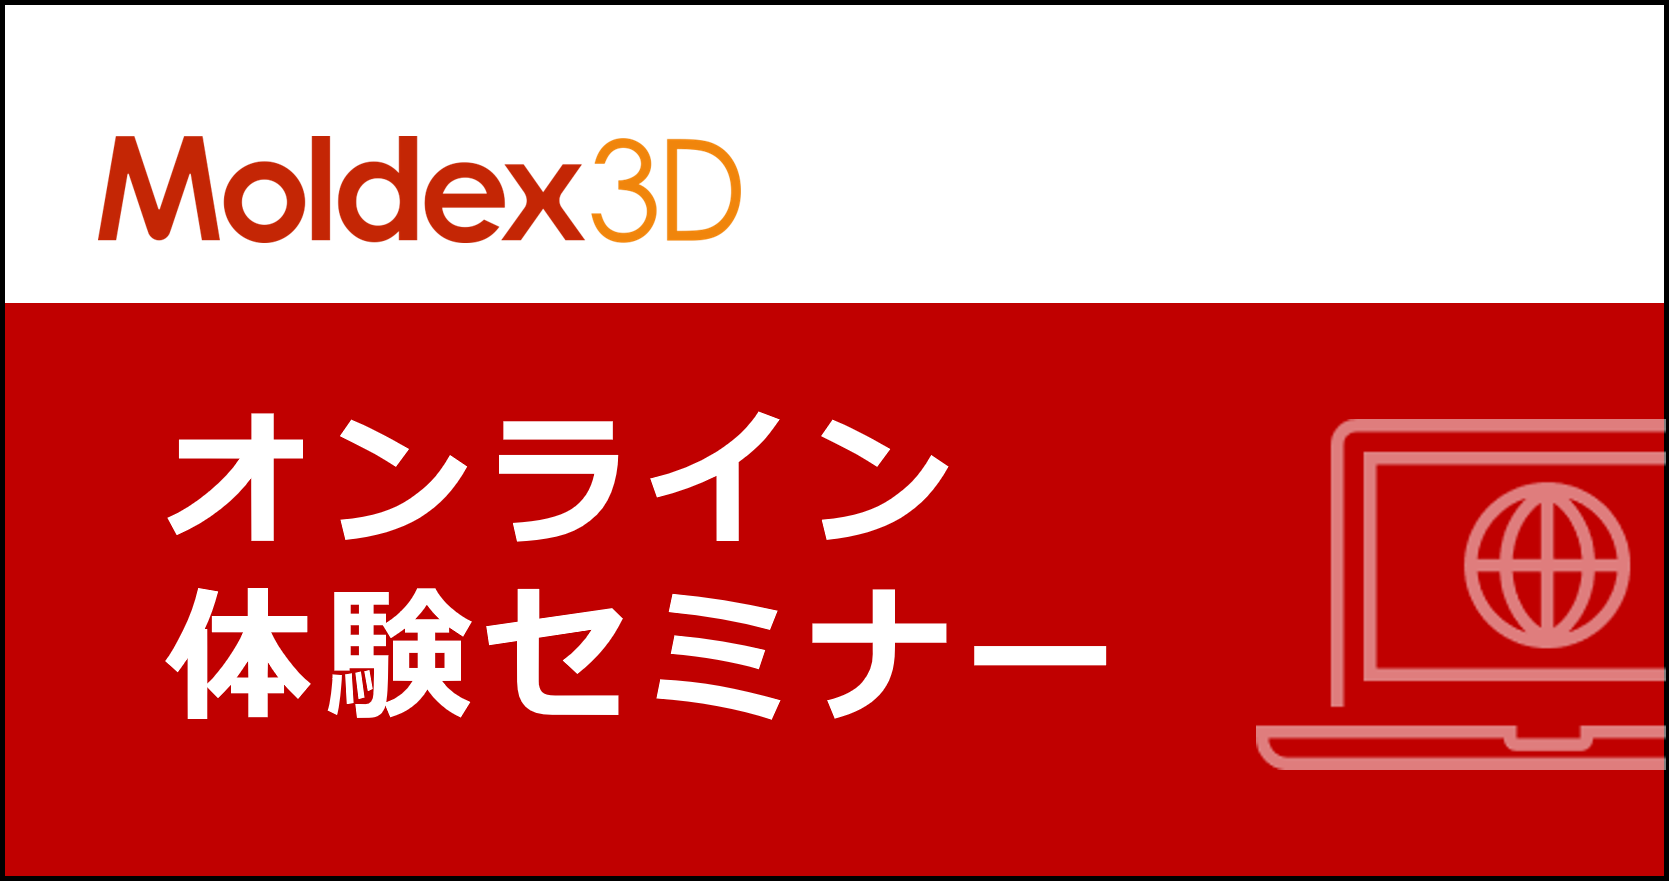 【大阪】4~5月 Moldex3D/ BLM 講習 ※旧「Designer BLM講習」